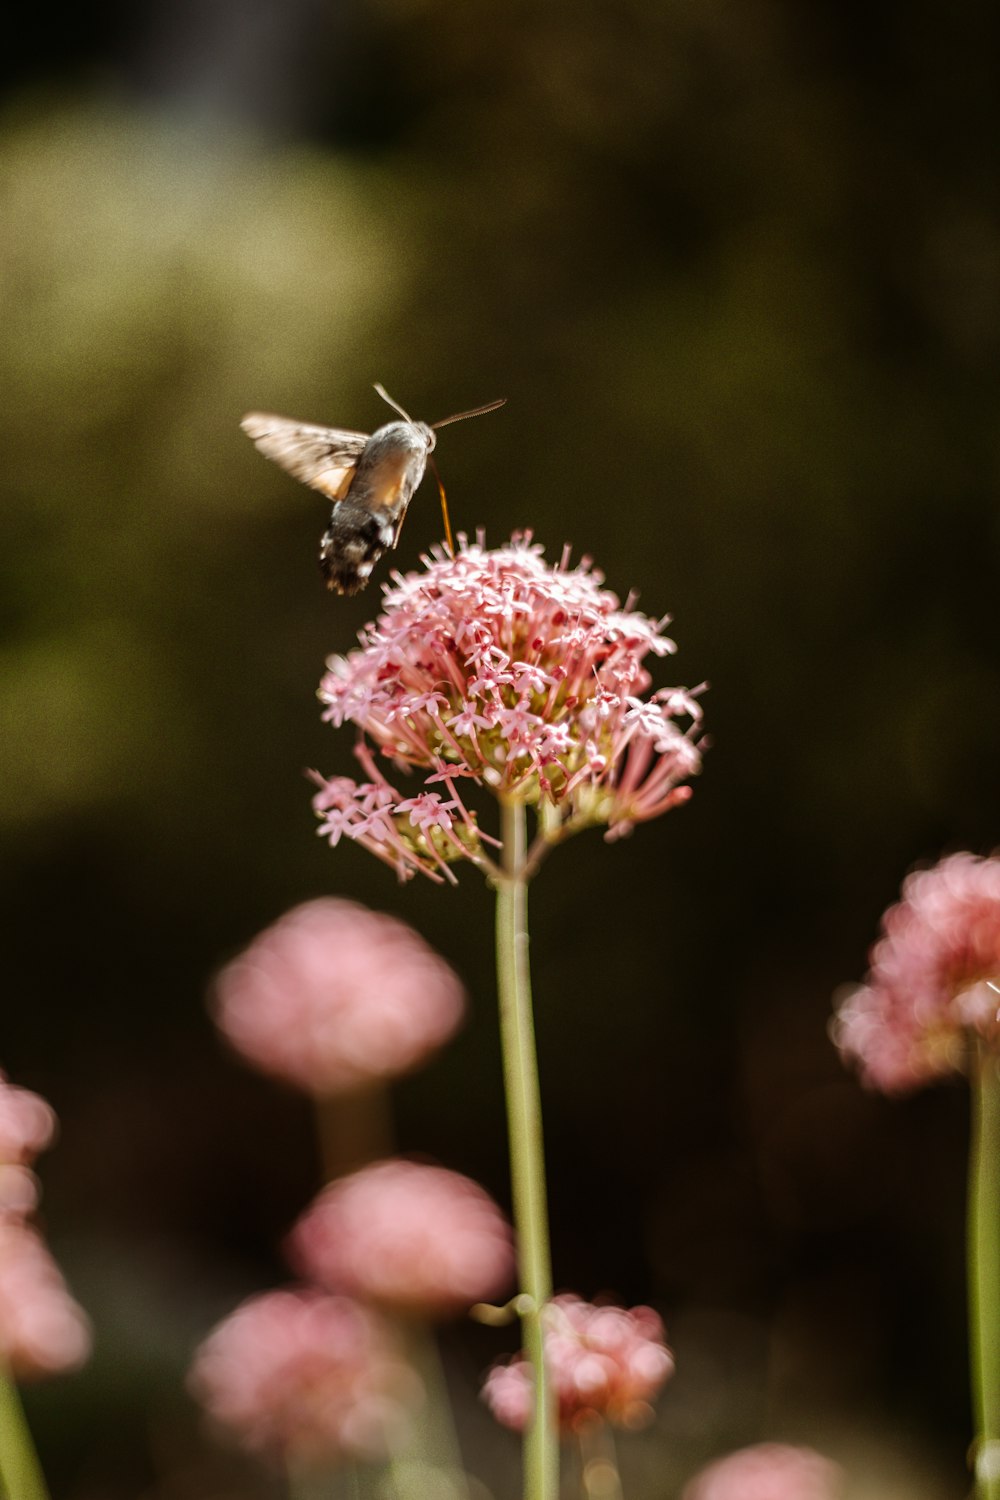 beija-flor marrom voando sobre a flor rosa